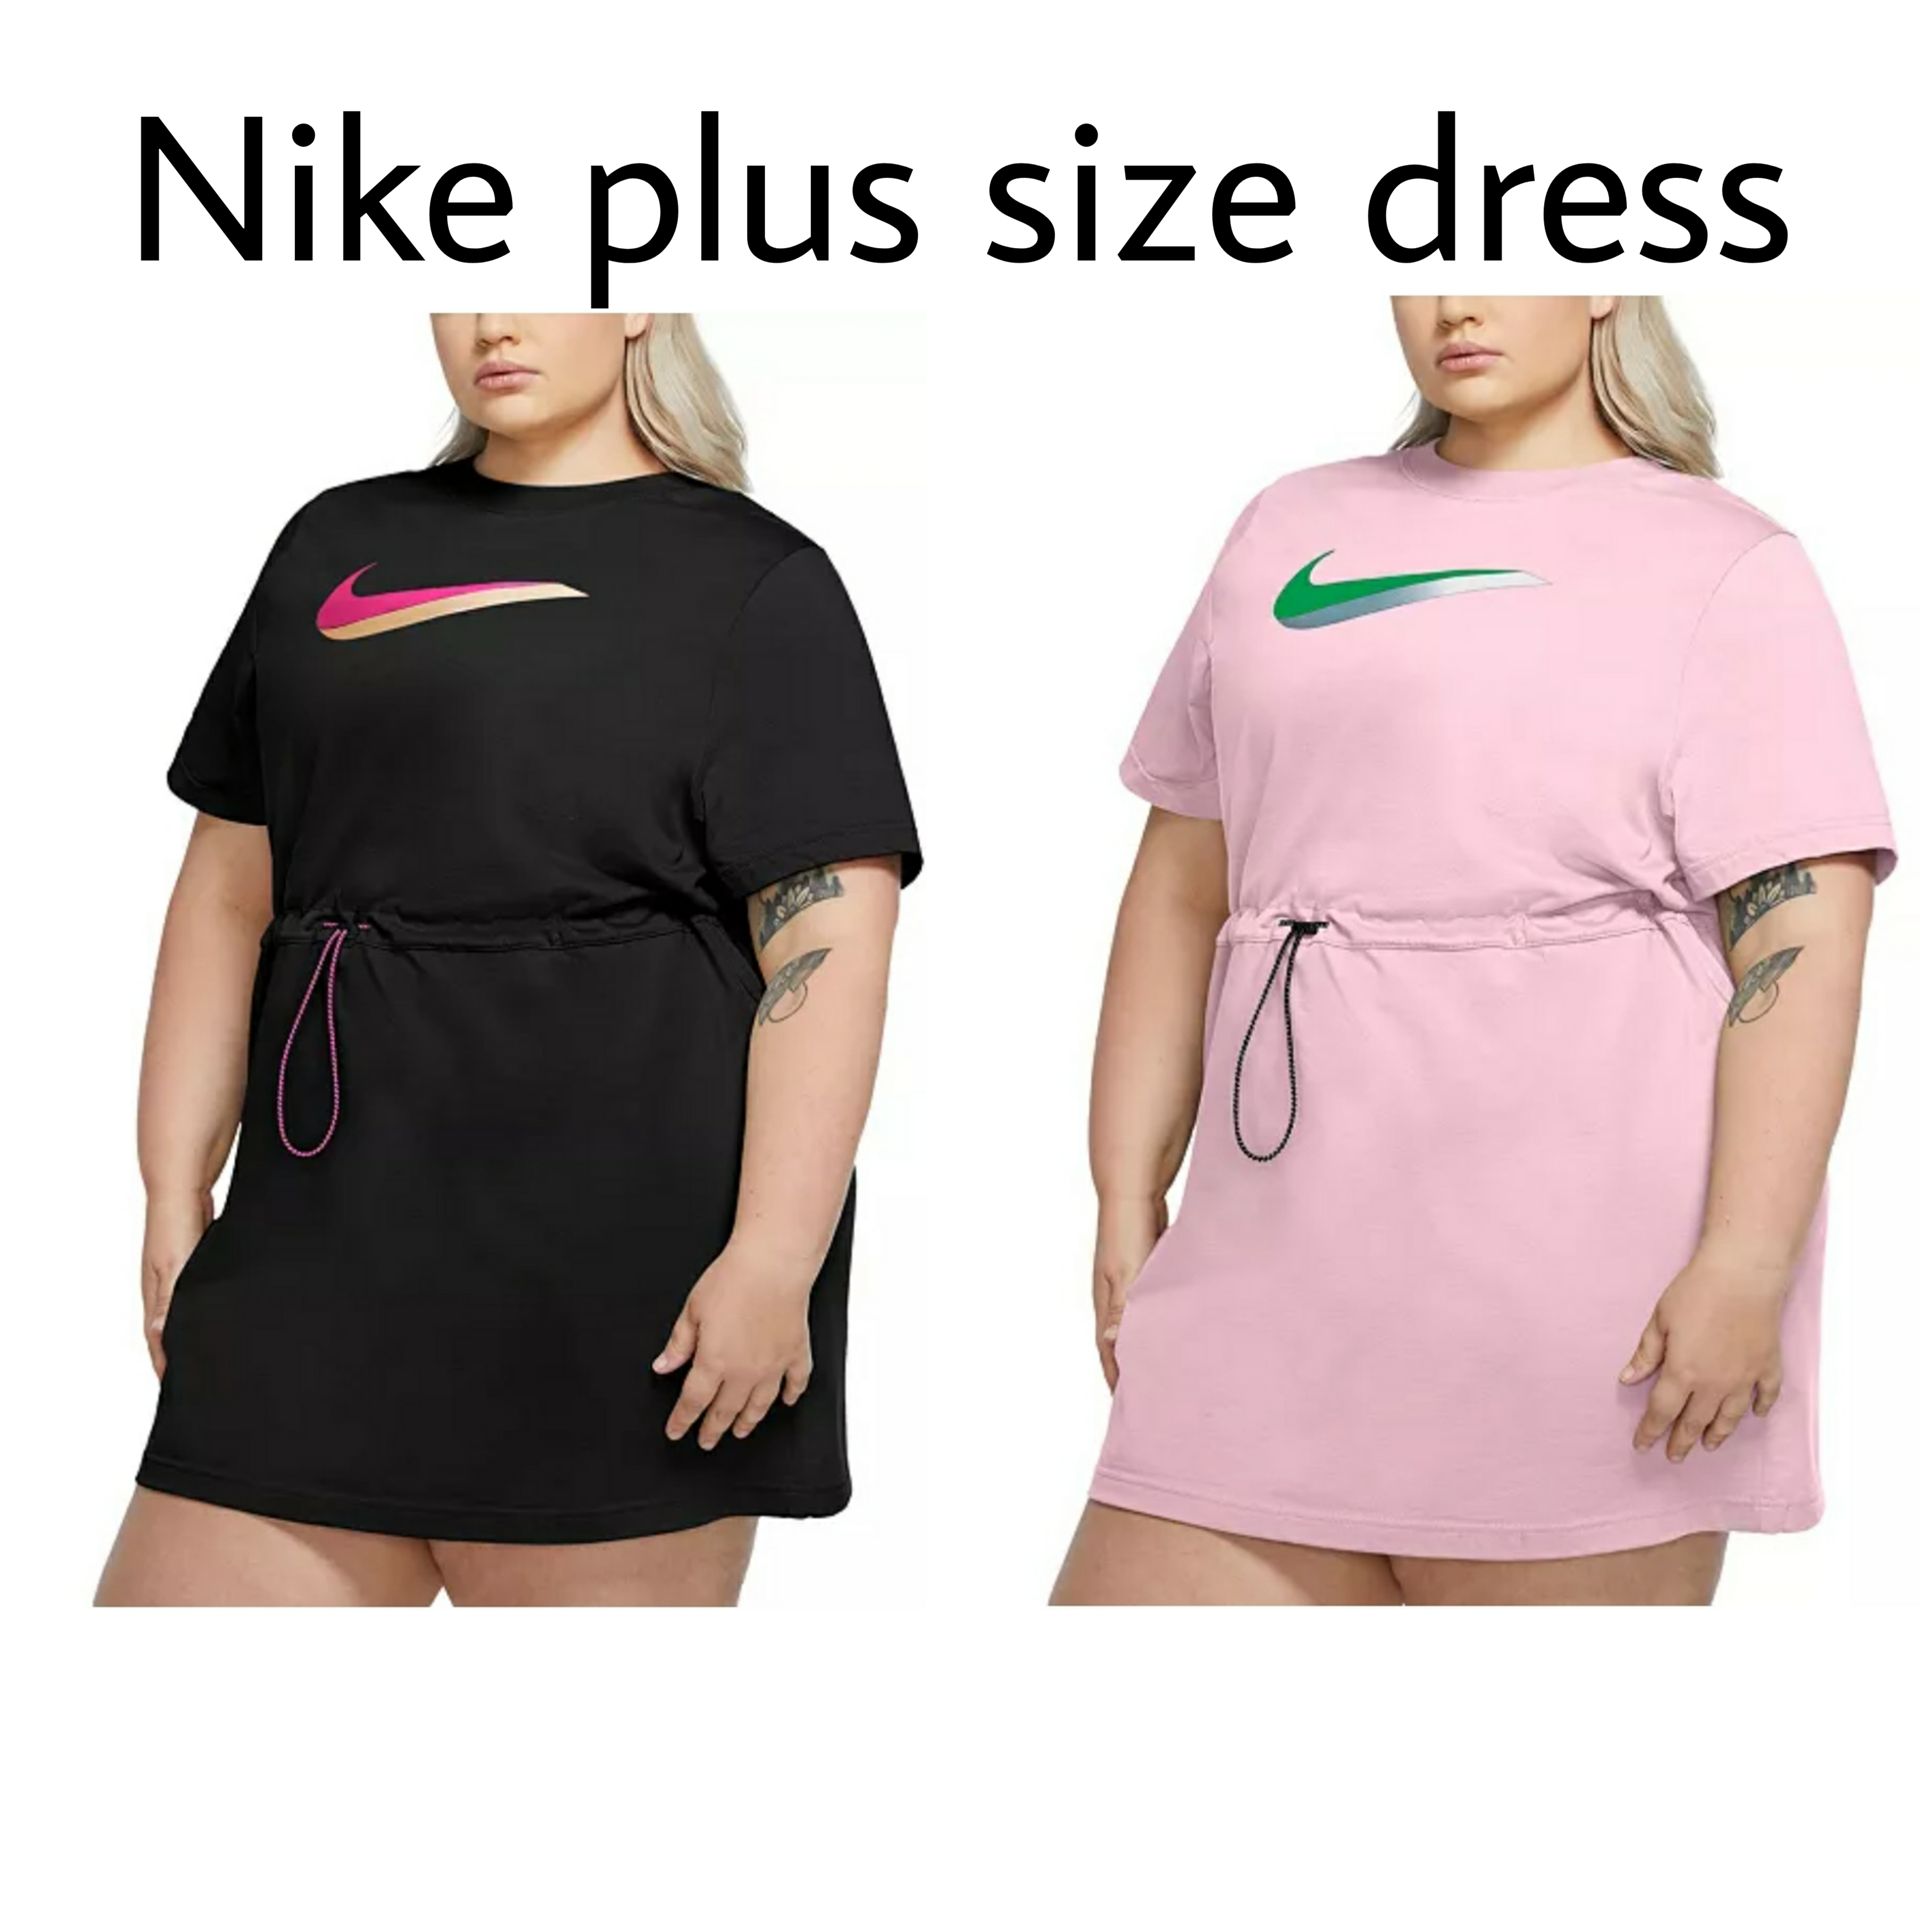 nike plus size dress macys